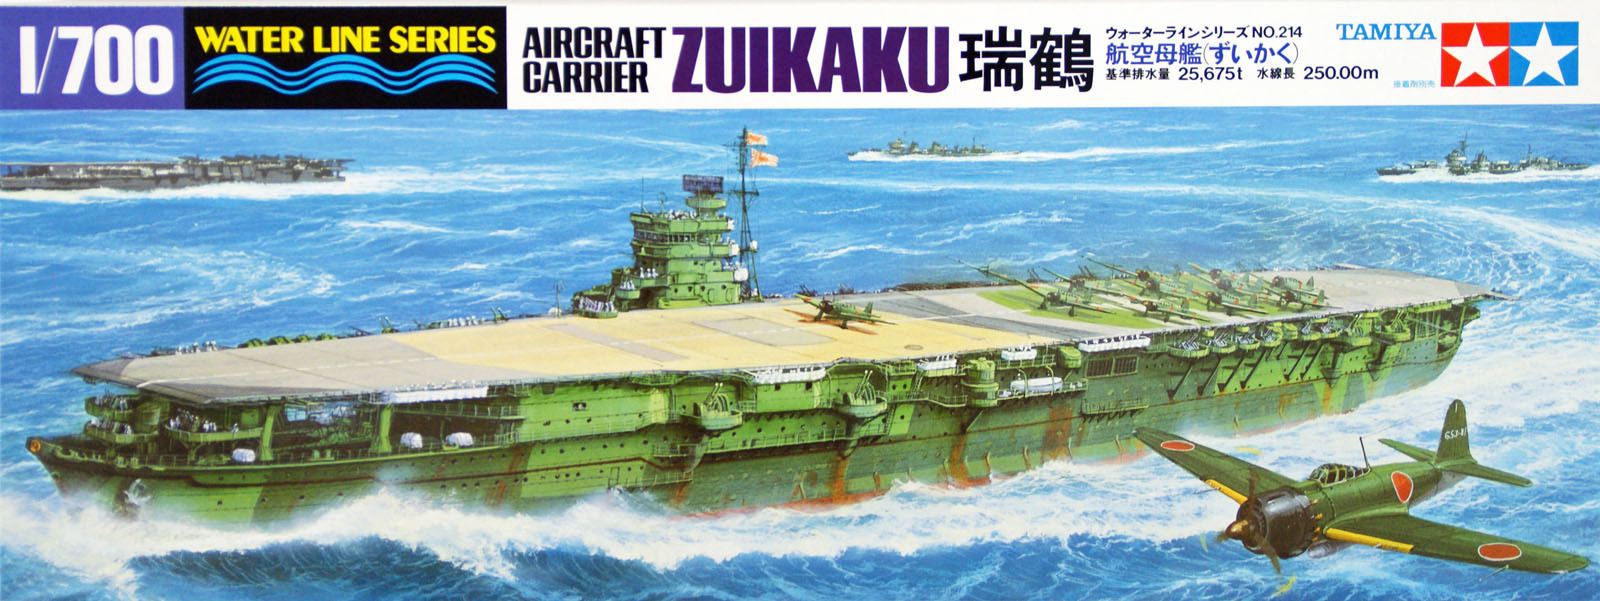 Japanese Carrier Zuikaku